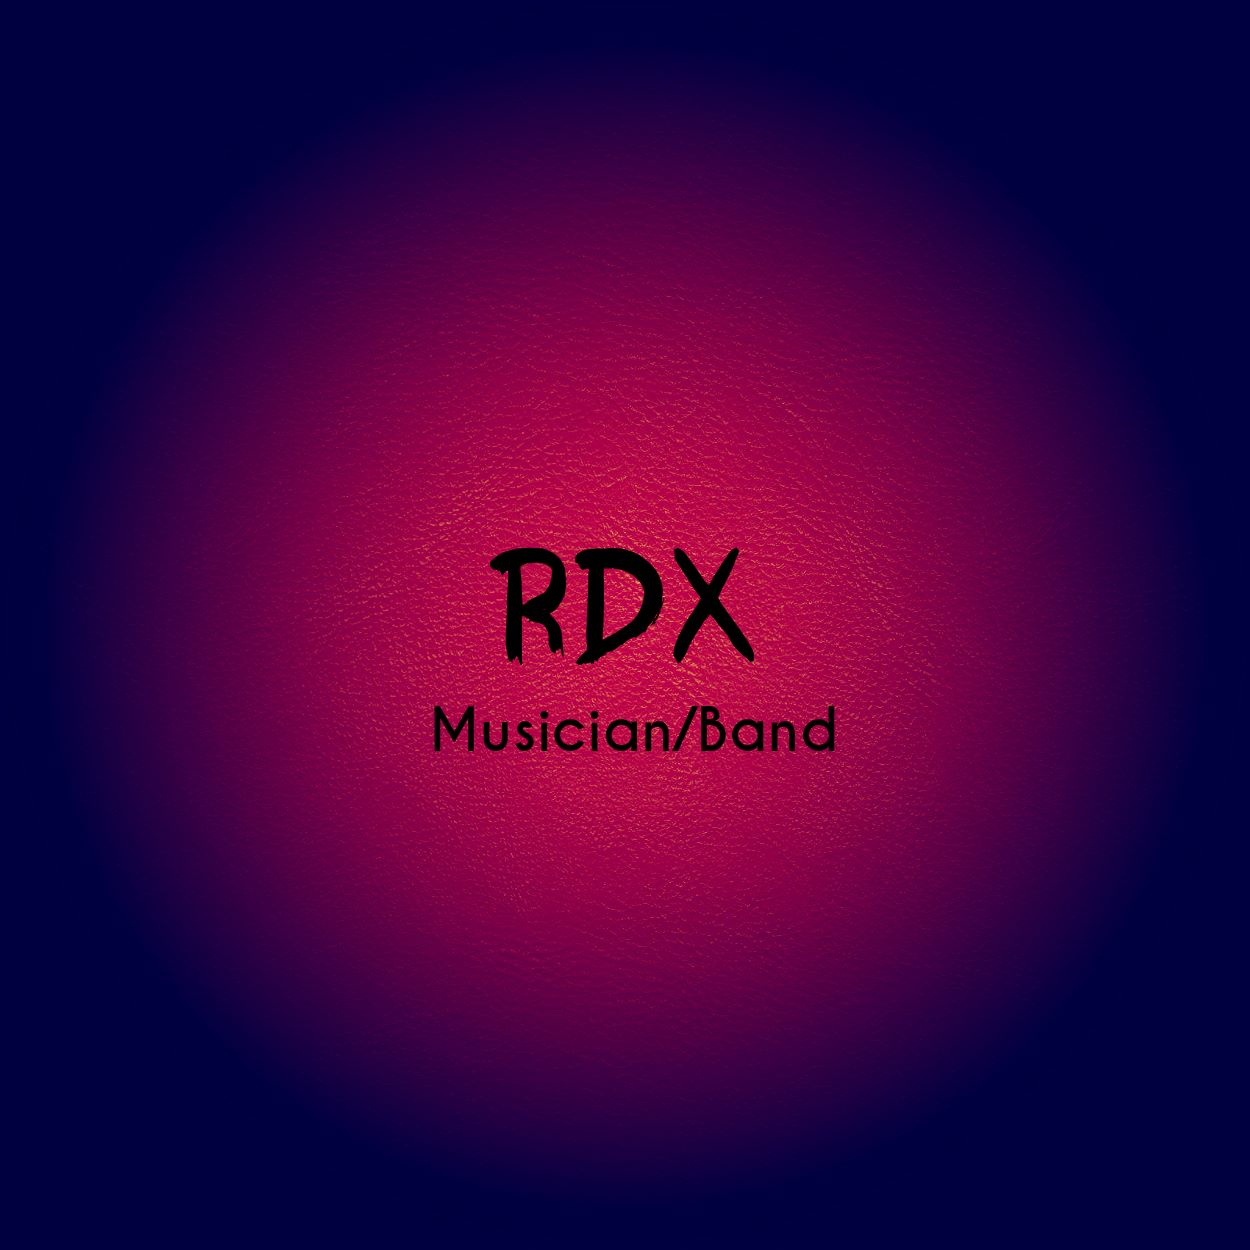 RDX Logo by tungsten on DeviantArt